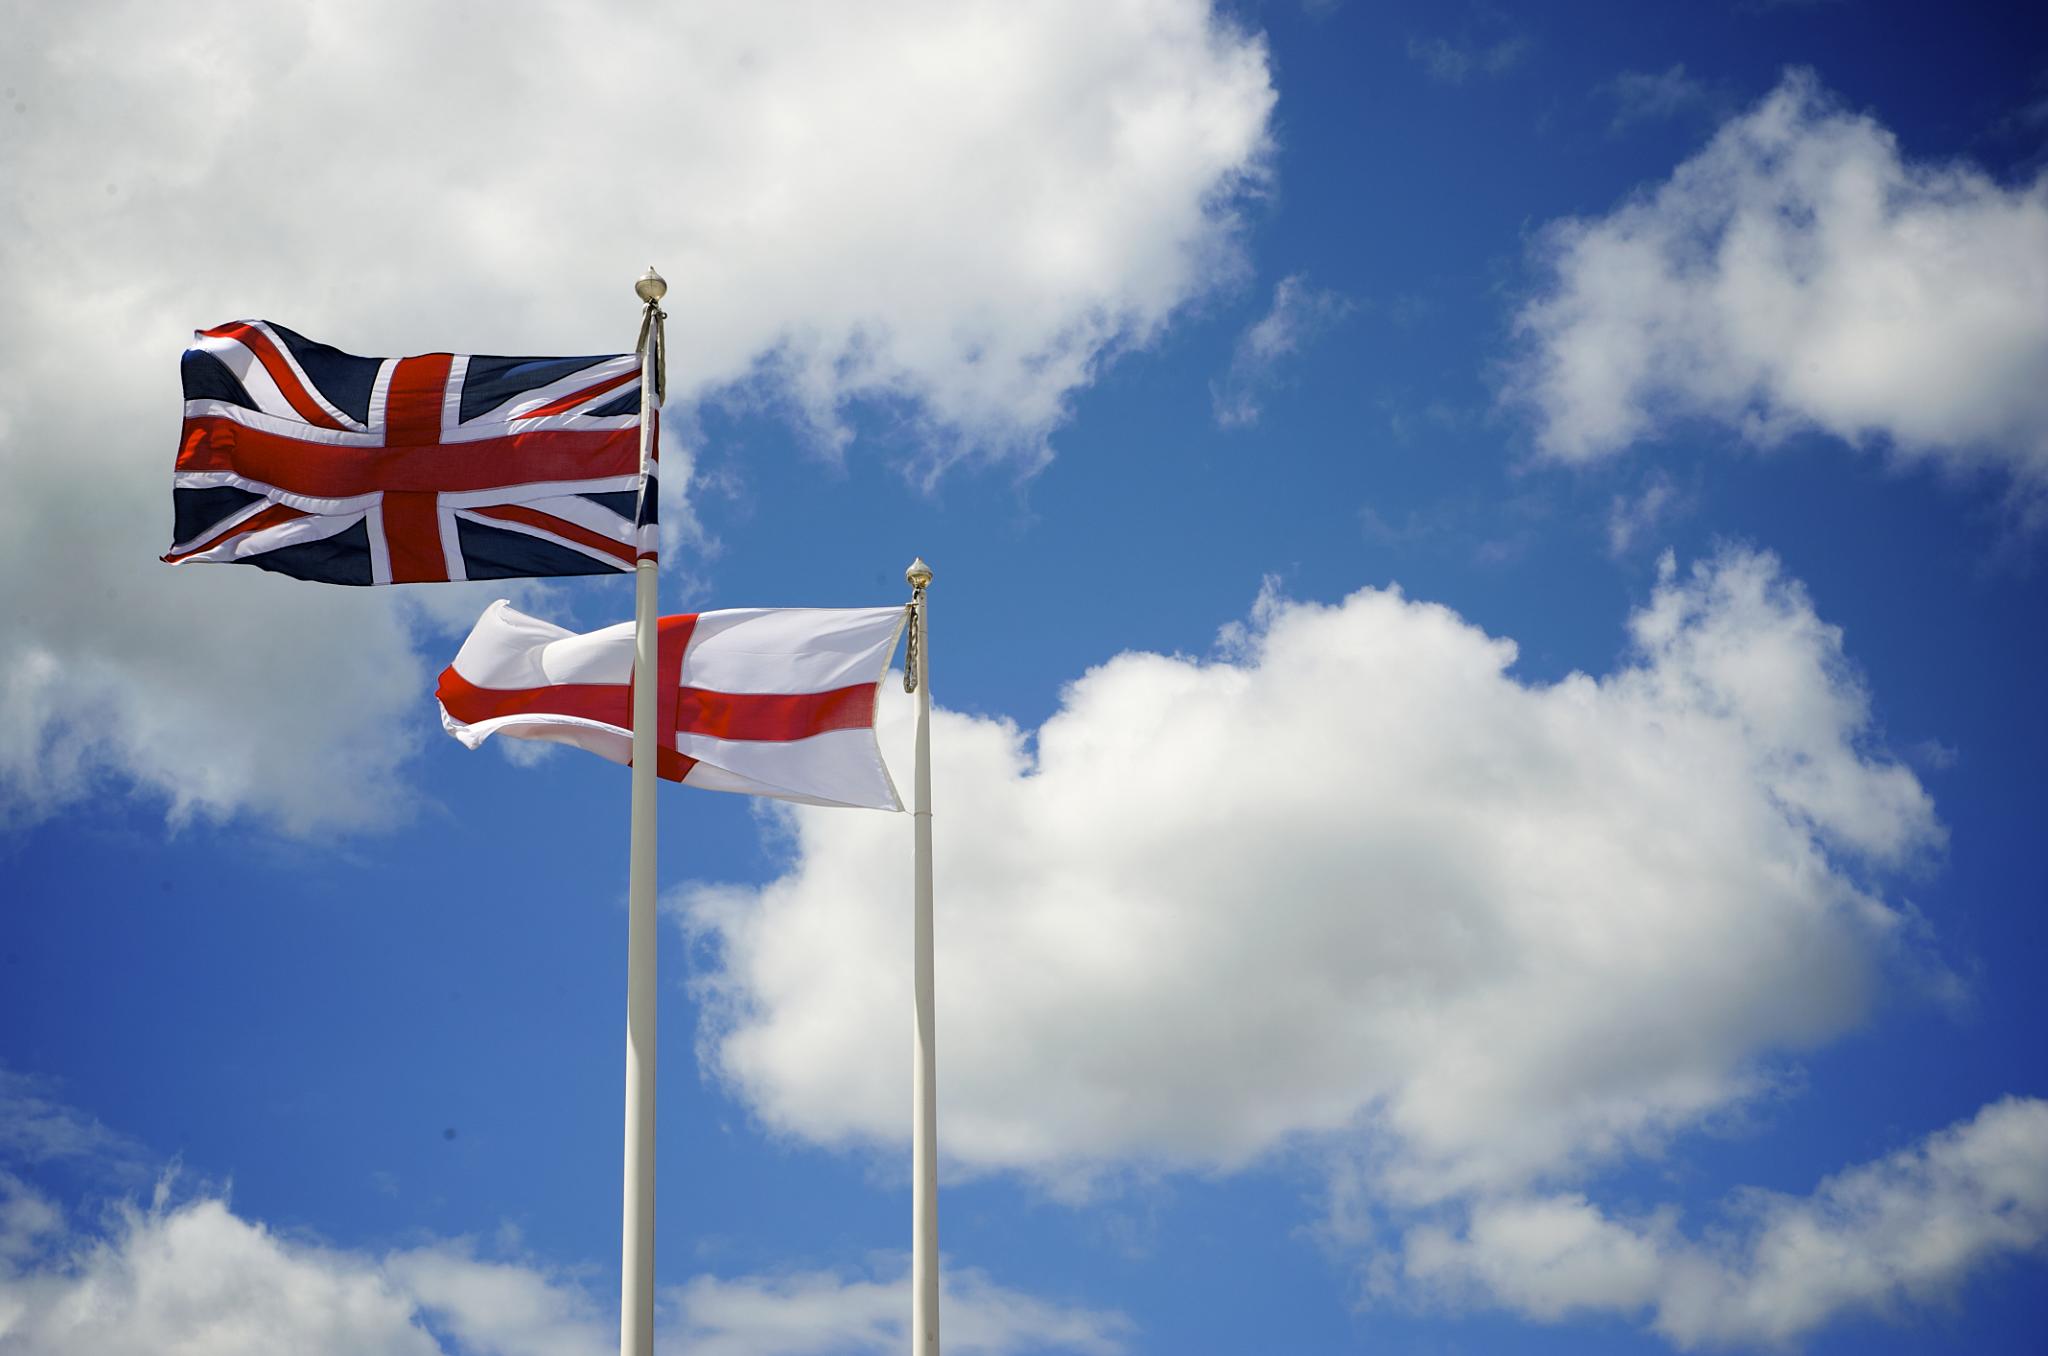 Právě si prohlížíte Anglie, Británie, Velká Británie, Britské ostrovy, Spojené království. Vyznáte se v místopise?